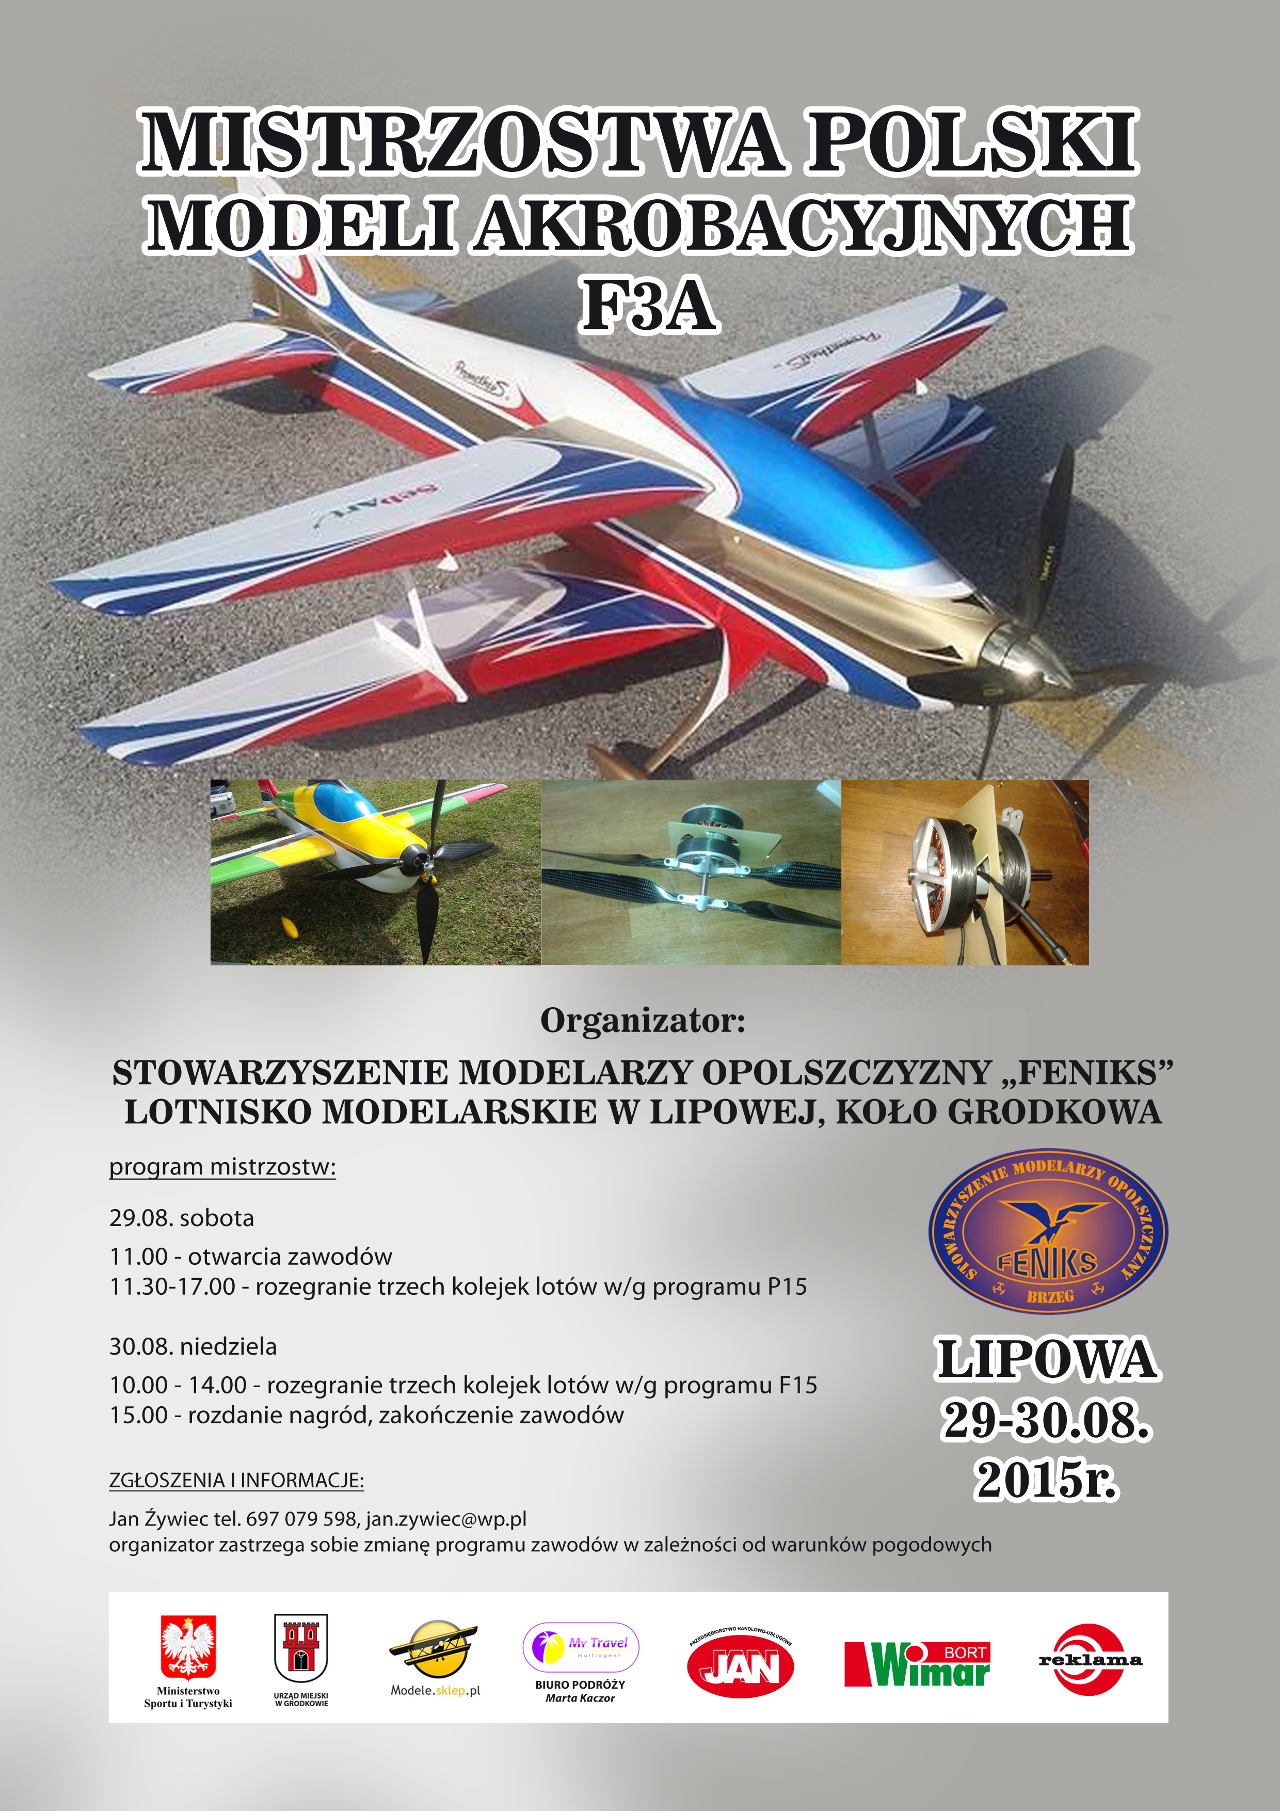 Mistrzostwa Polski Modeli Akrobacyjnych F3A 2015